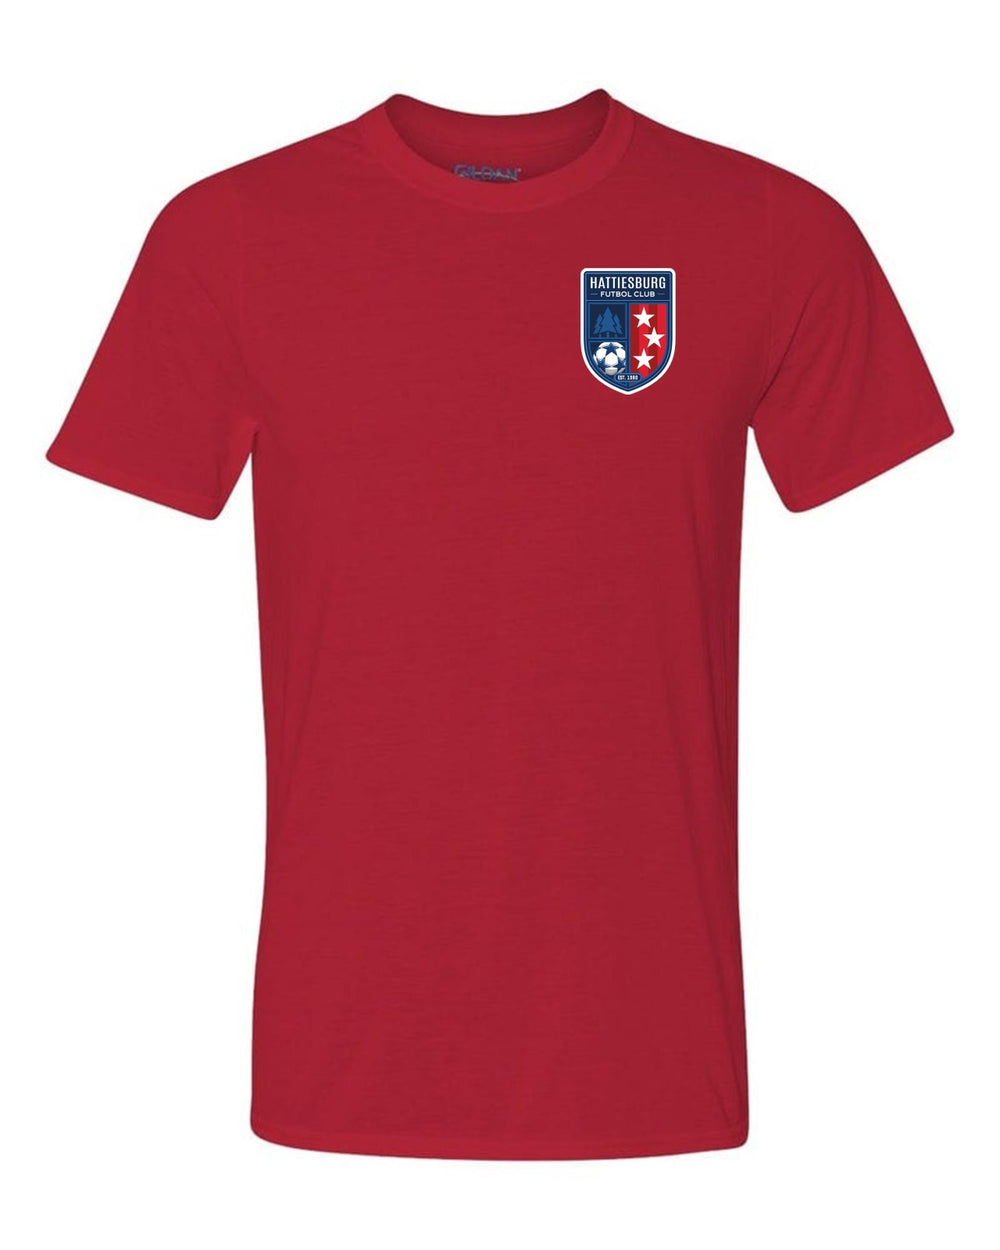 HFC Short-Sleeve Performance T-Shirt HFC Spirtwear Red Mens Small - Third Coast Soccer